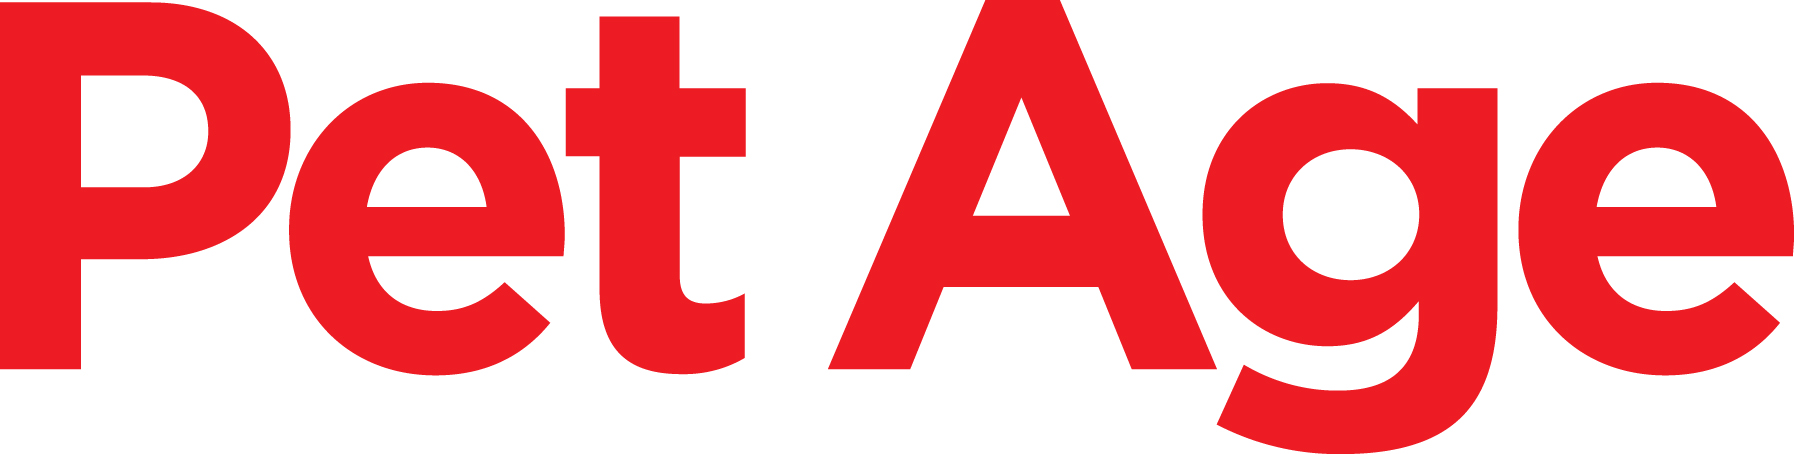 Pet Age Logo